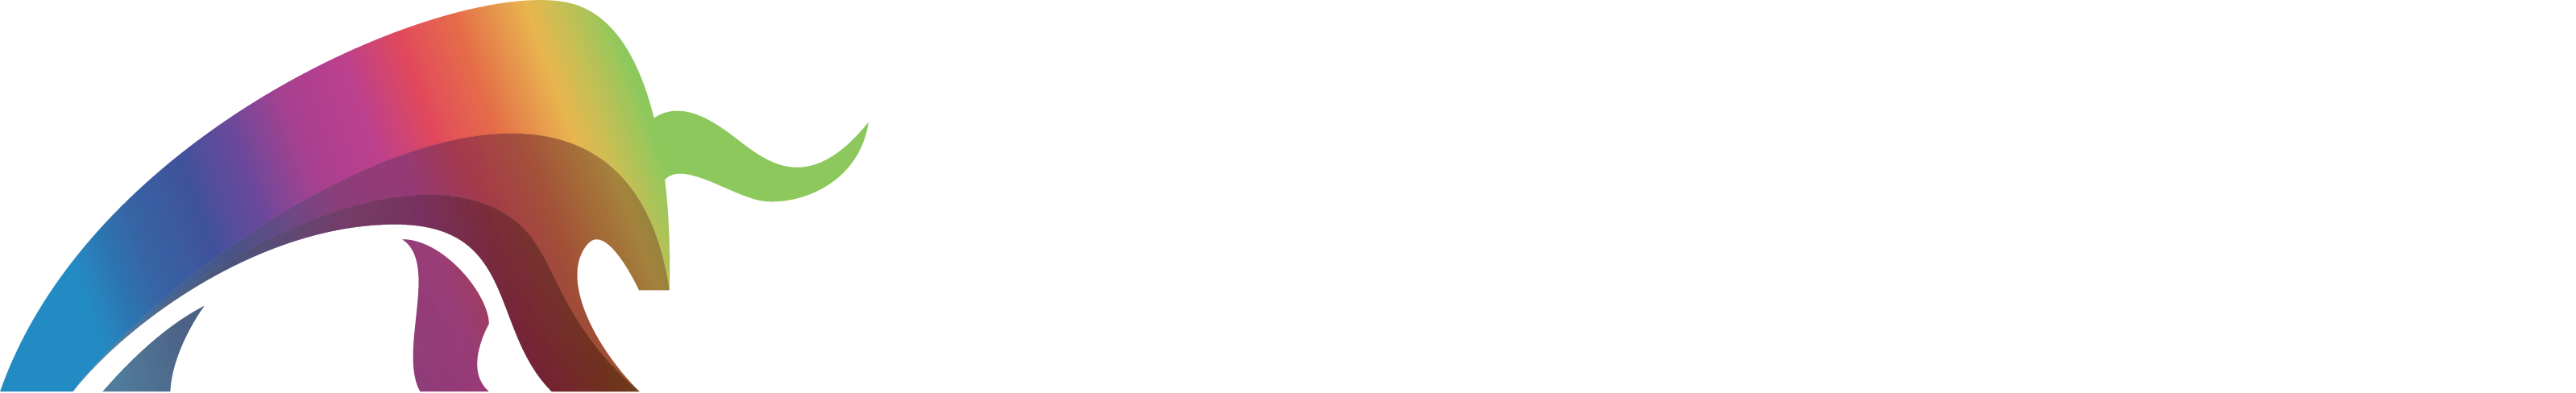 Techadox_Logo_Horiz-White-Text-masked